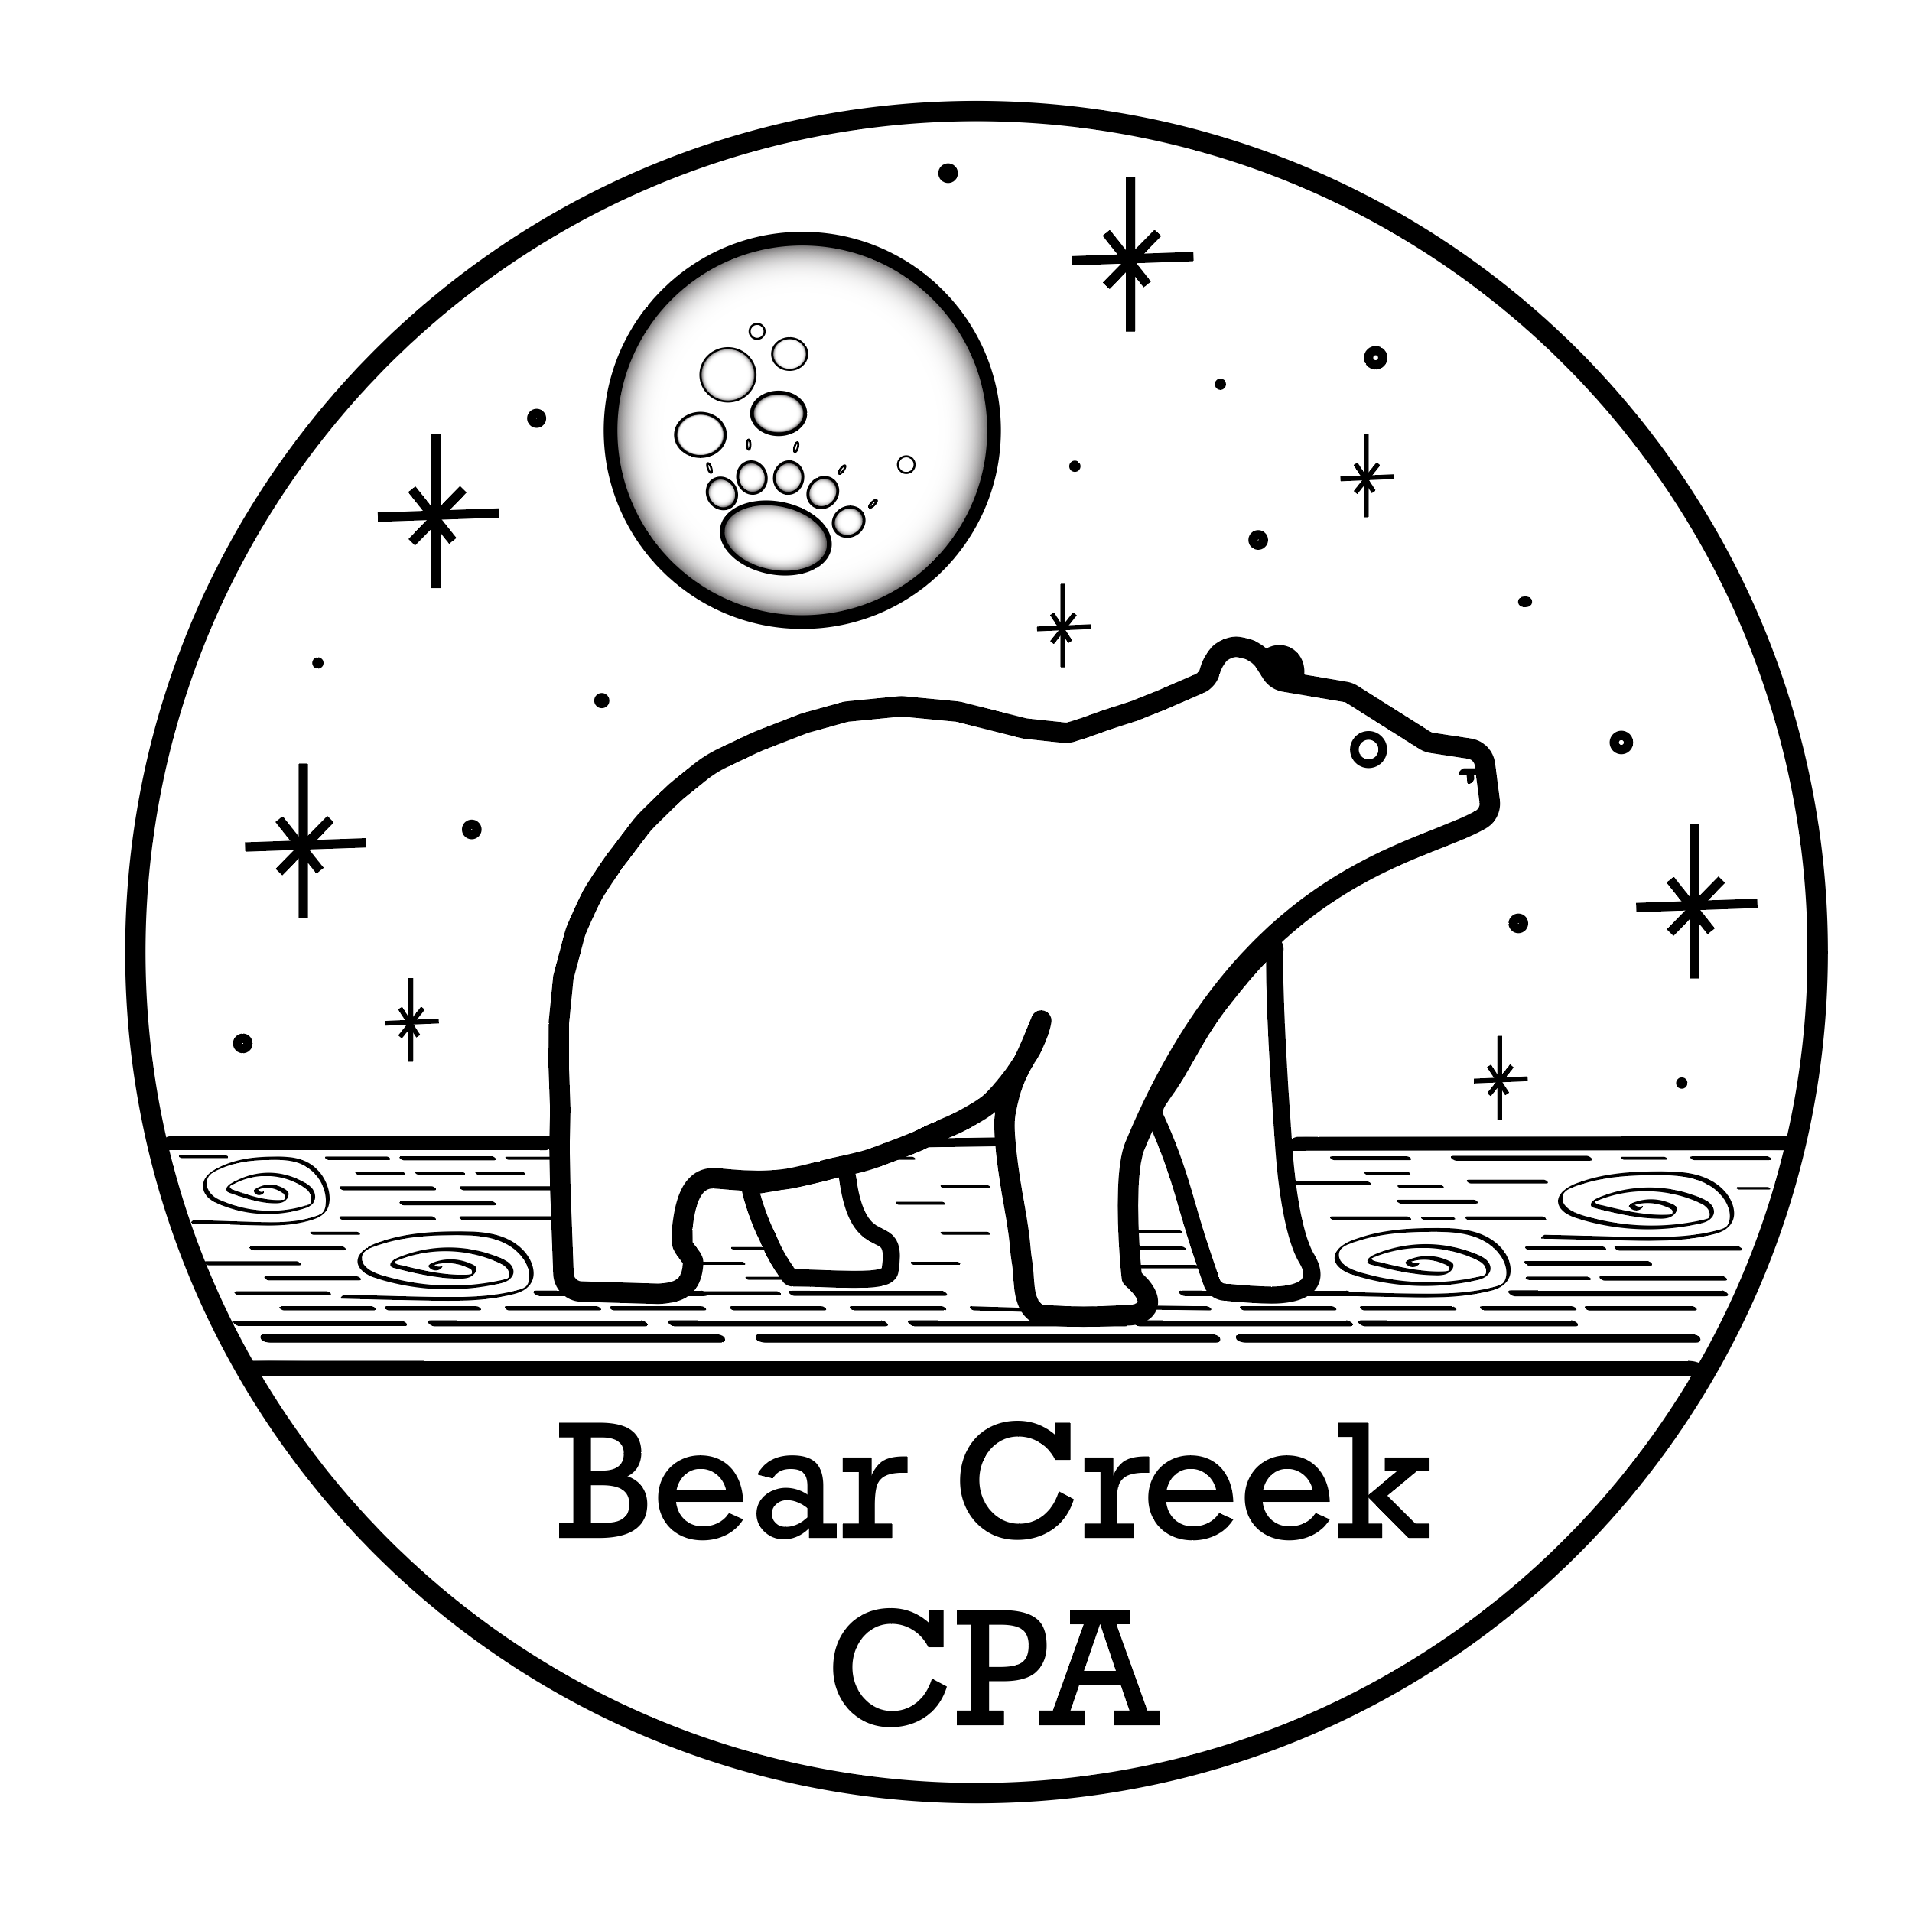 Bear Creek CPA - wip logo